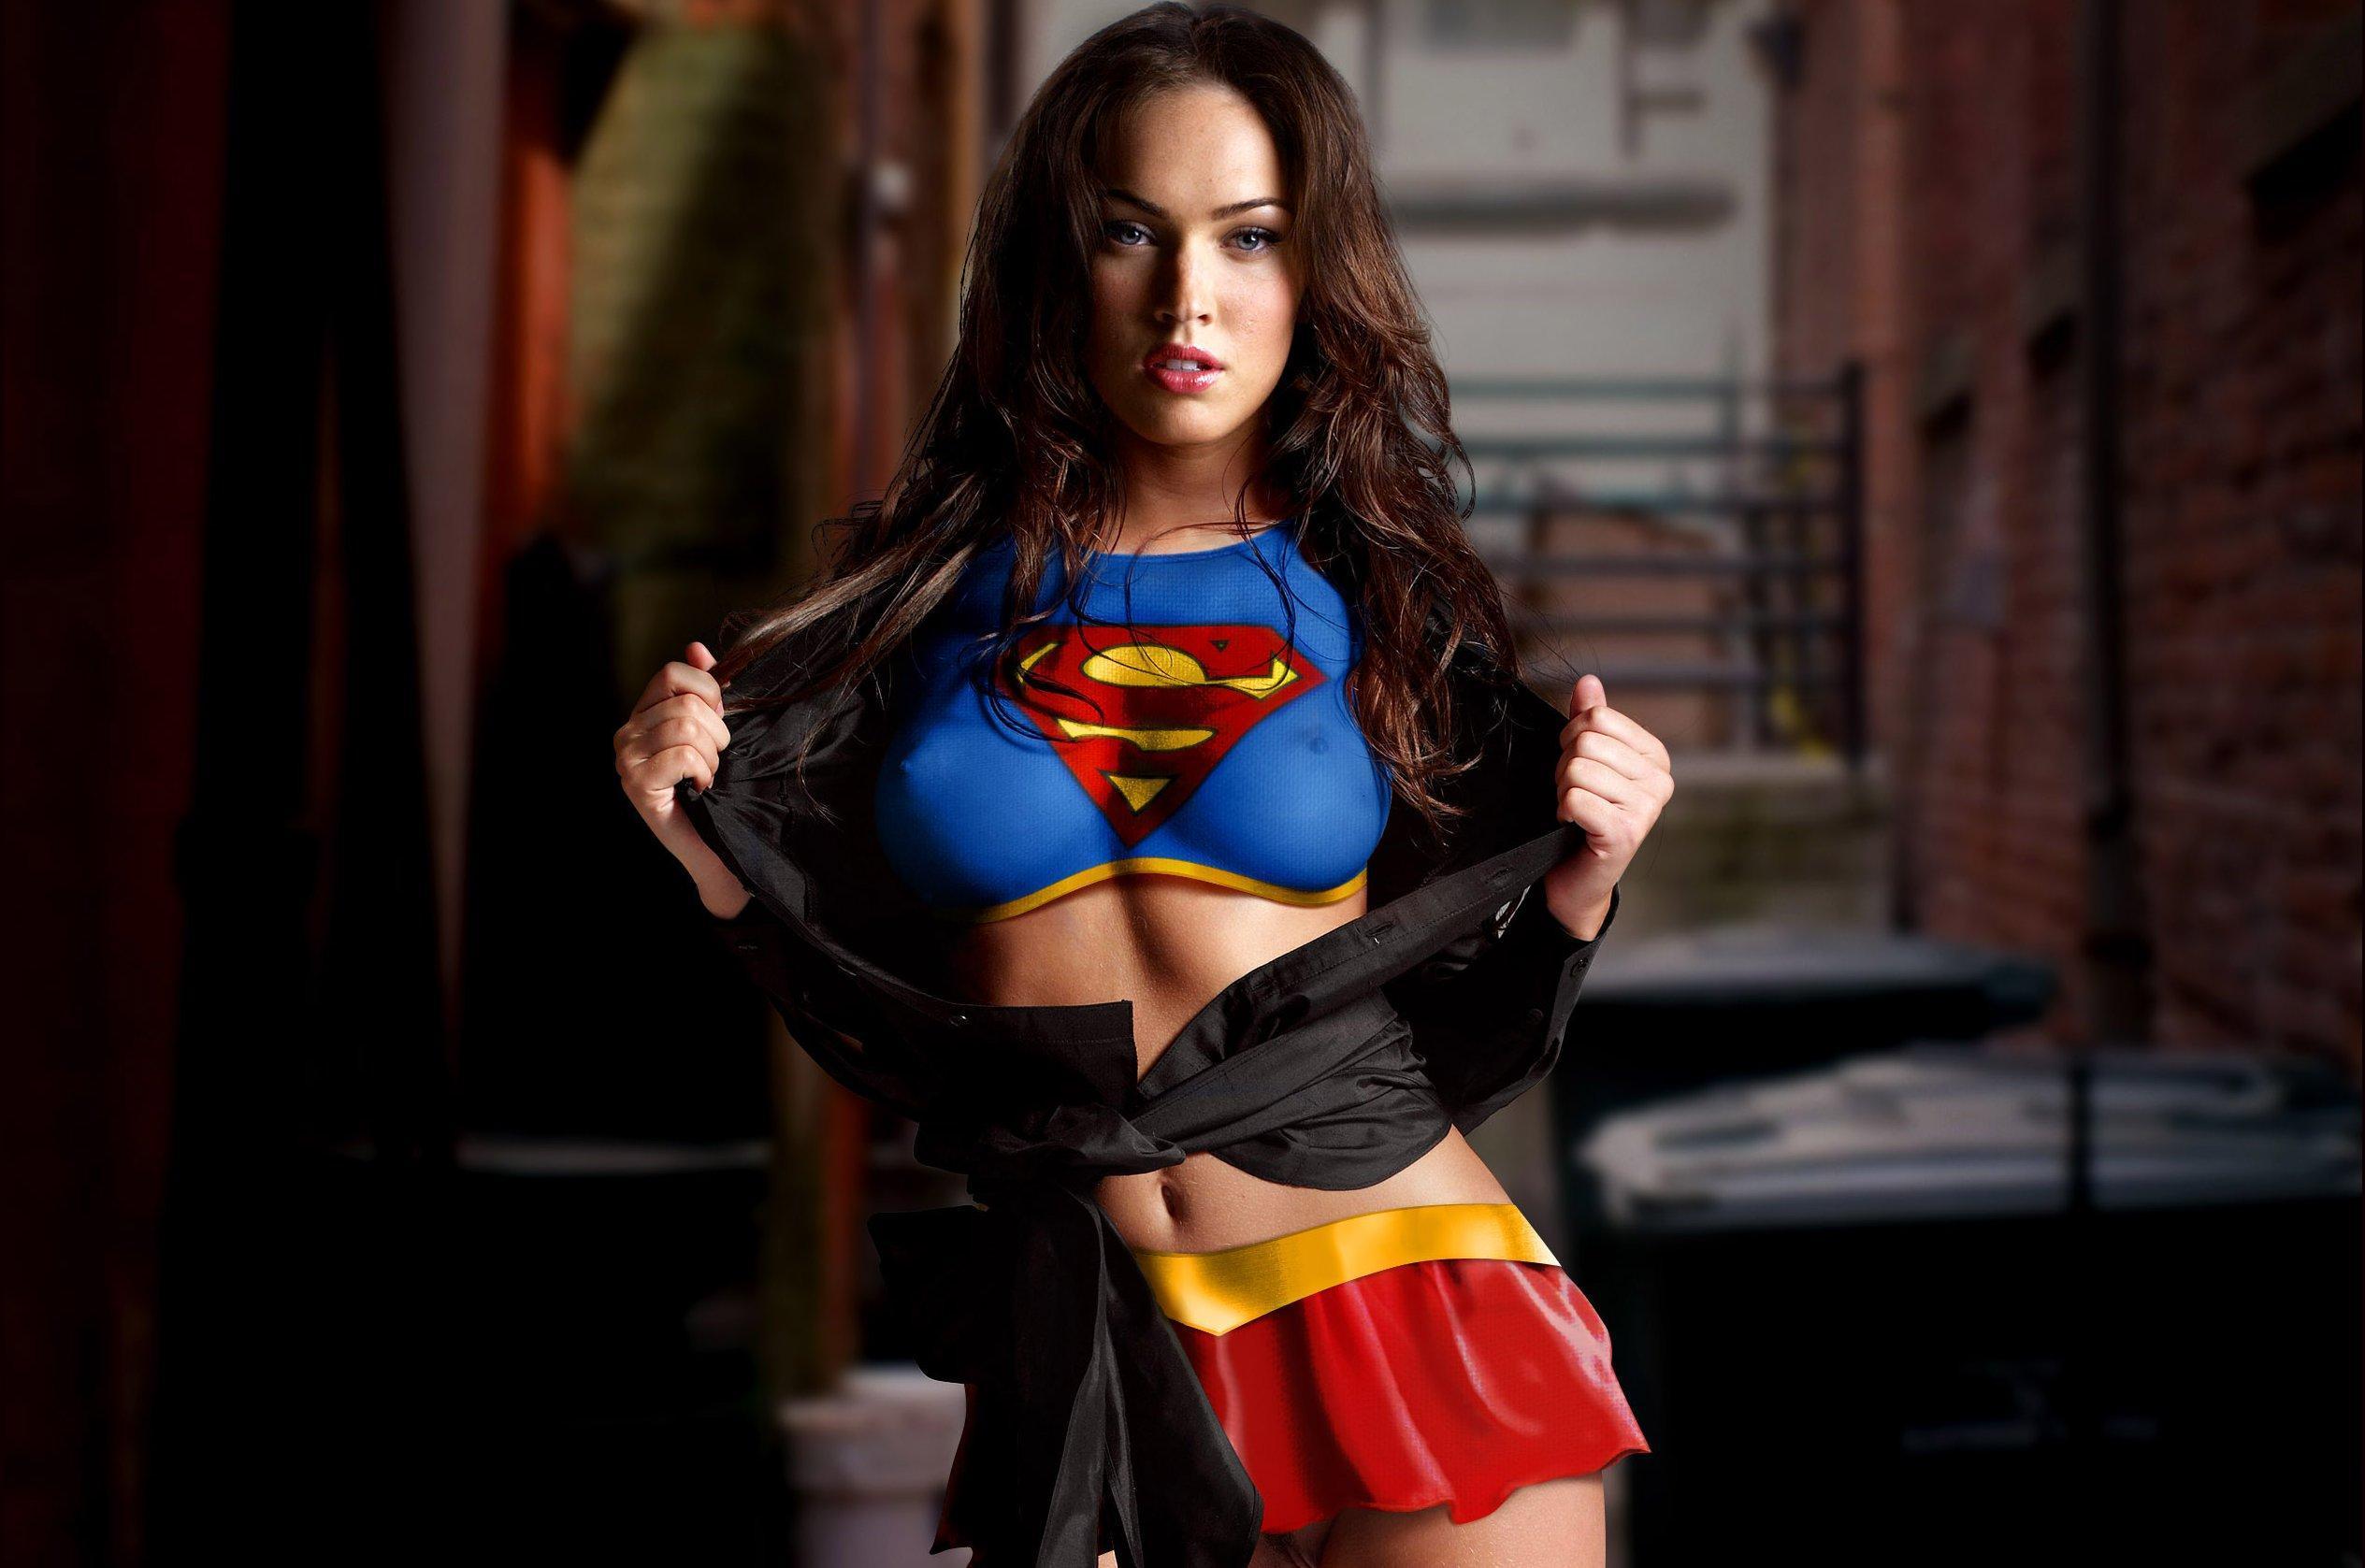 Megan-Fox-as-Supergirl-megan-fox-16333920-2529-1677.jpg